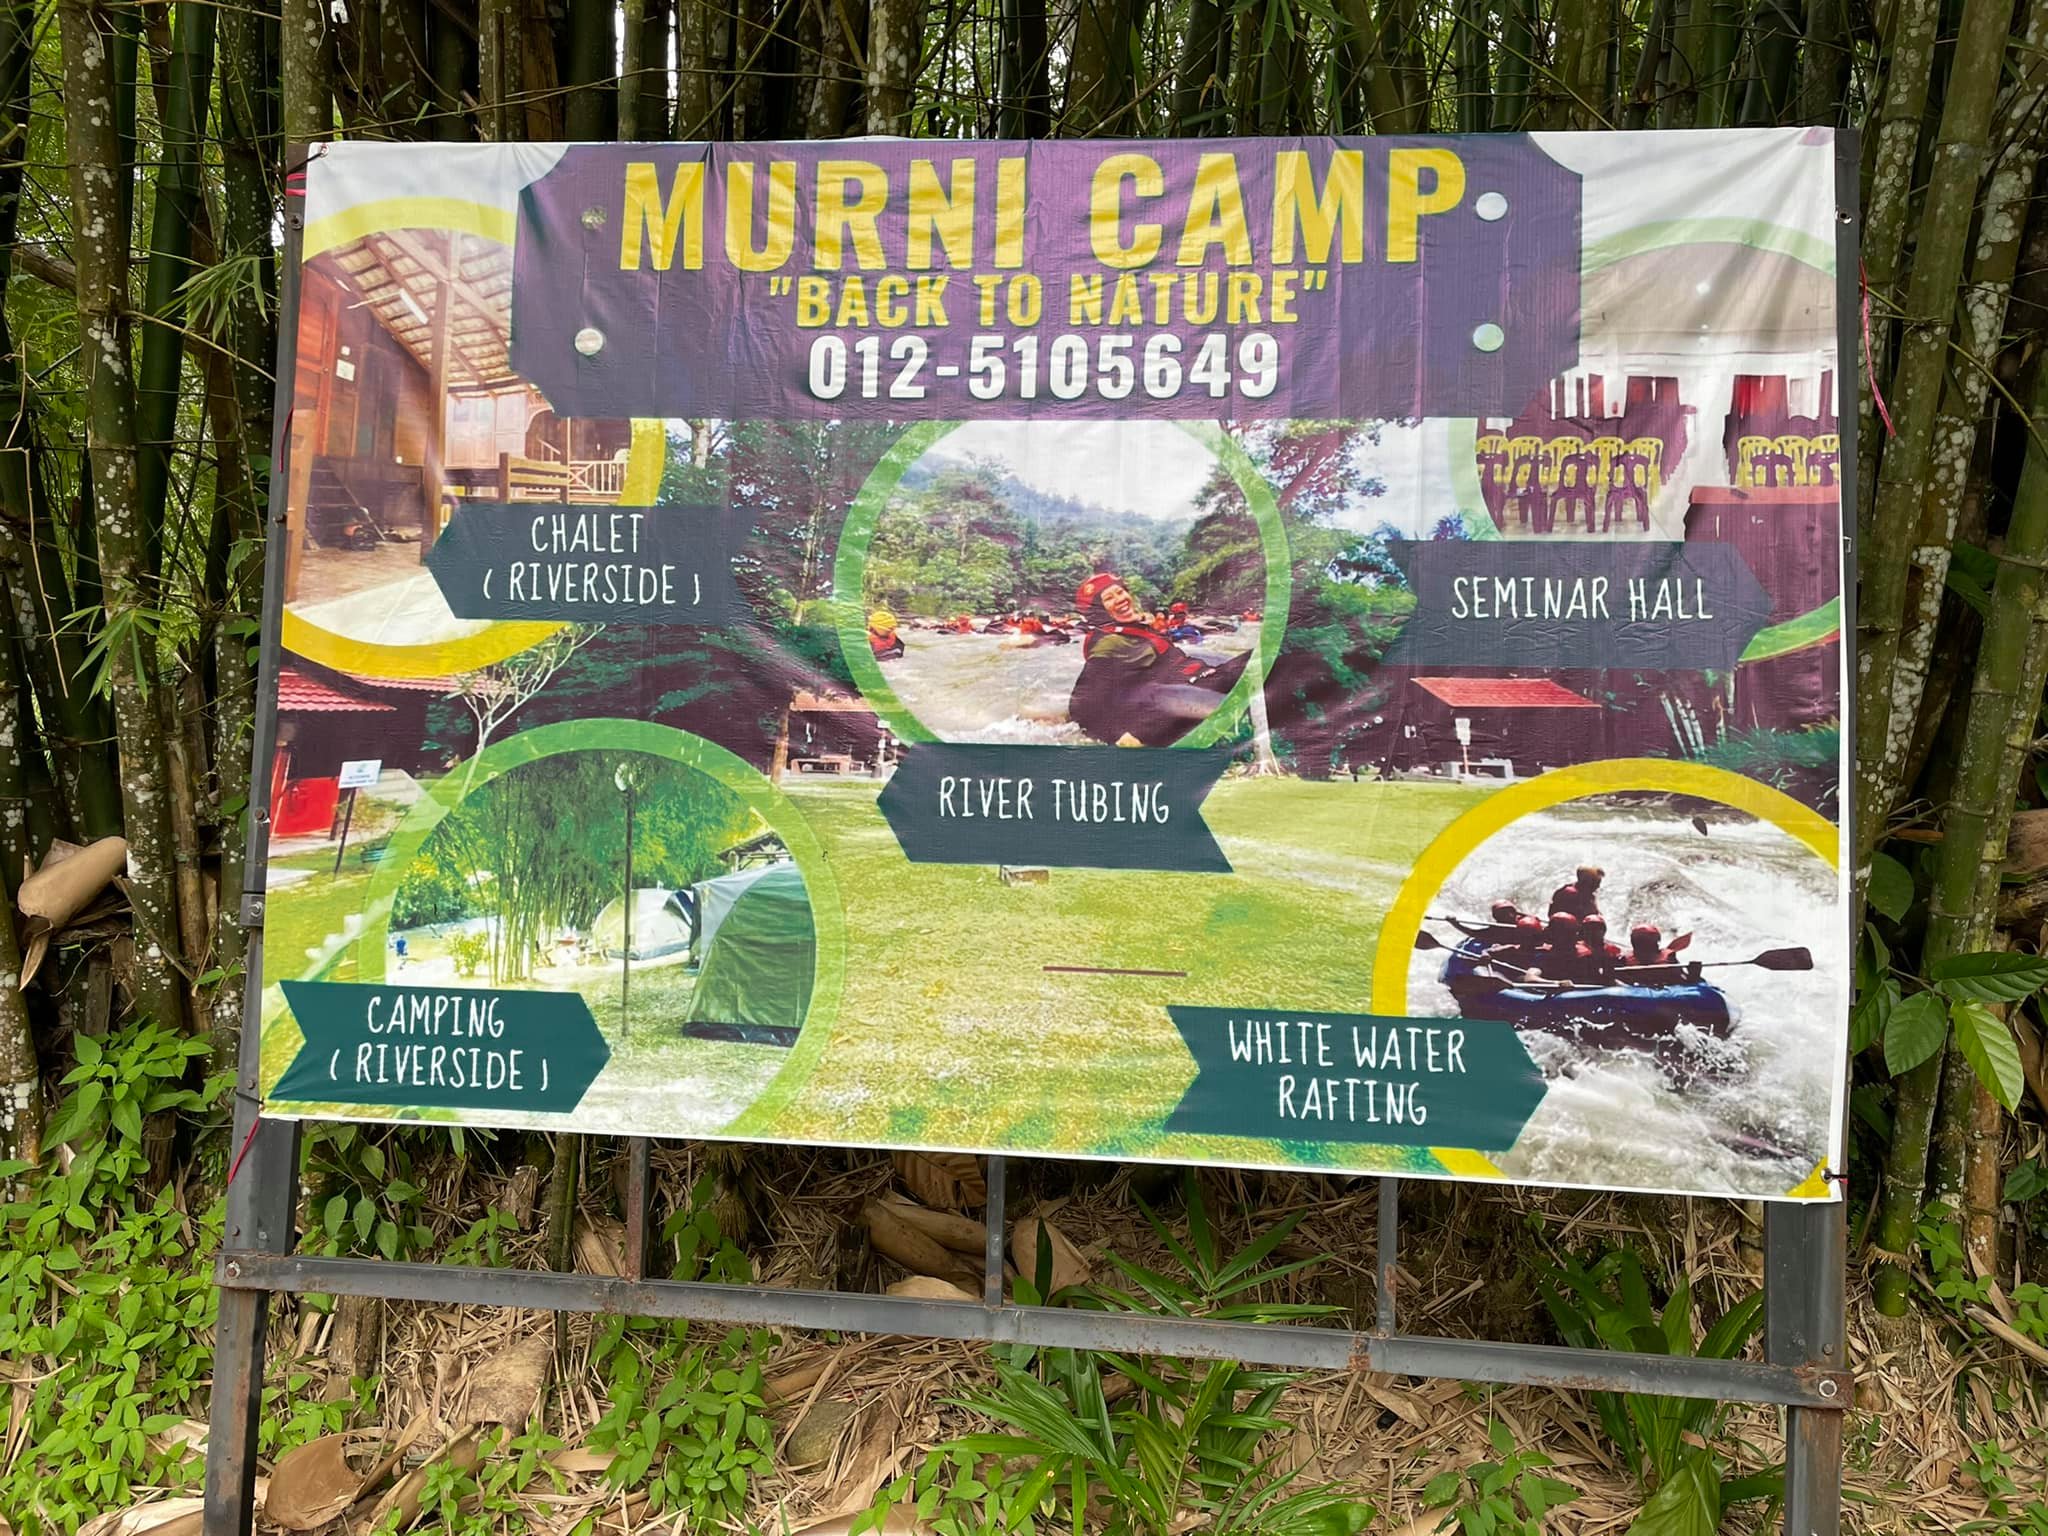 Murni Camp